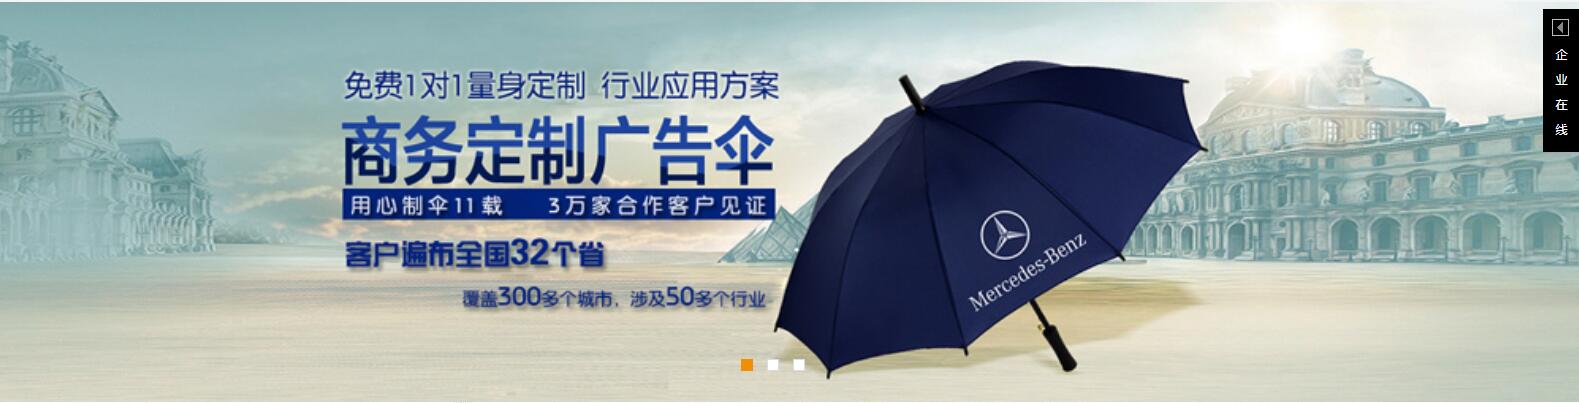 柳州太阳伞厂 柳州广告太阳伞